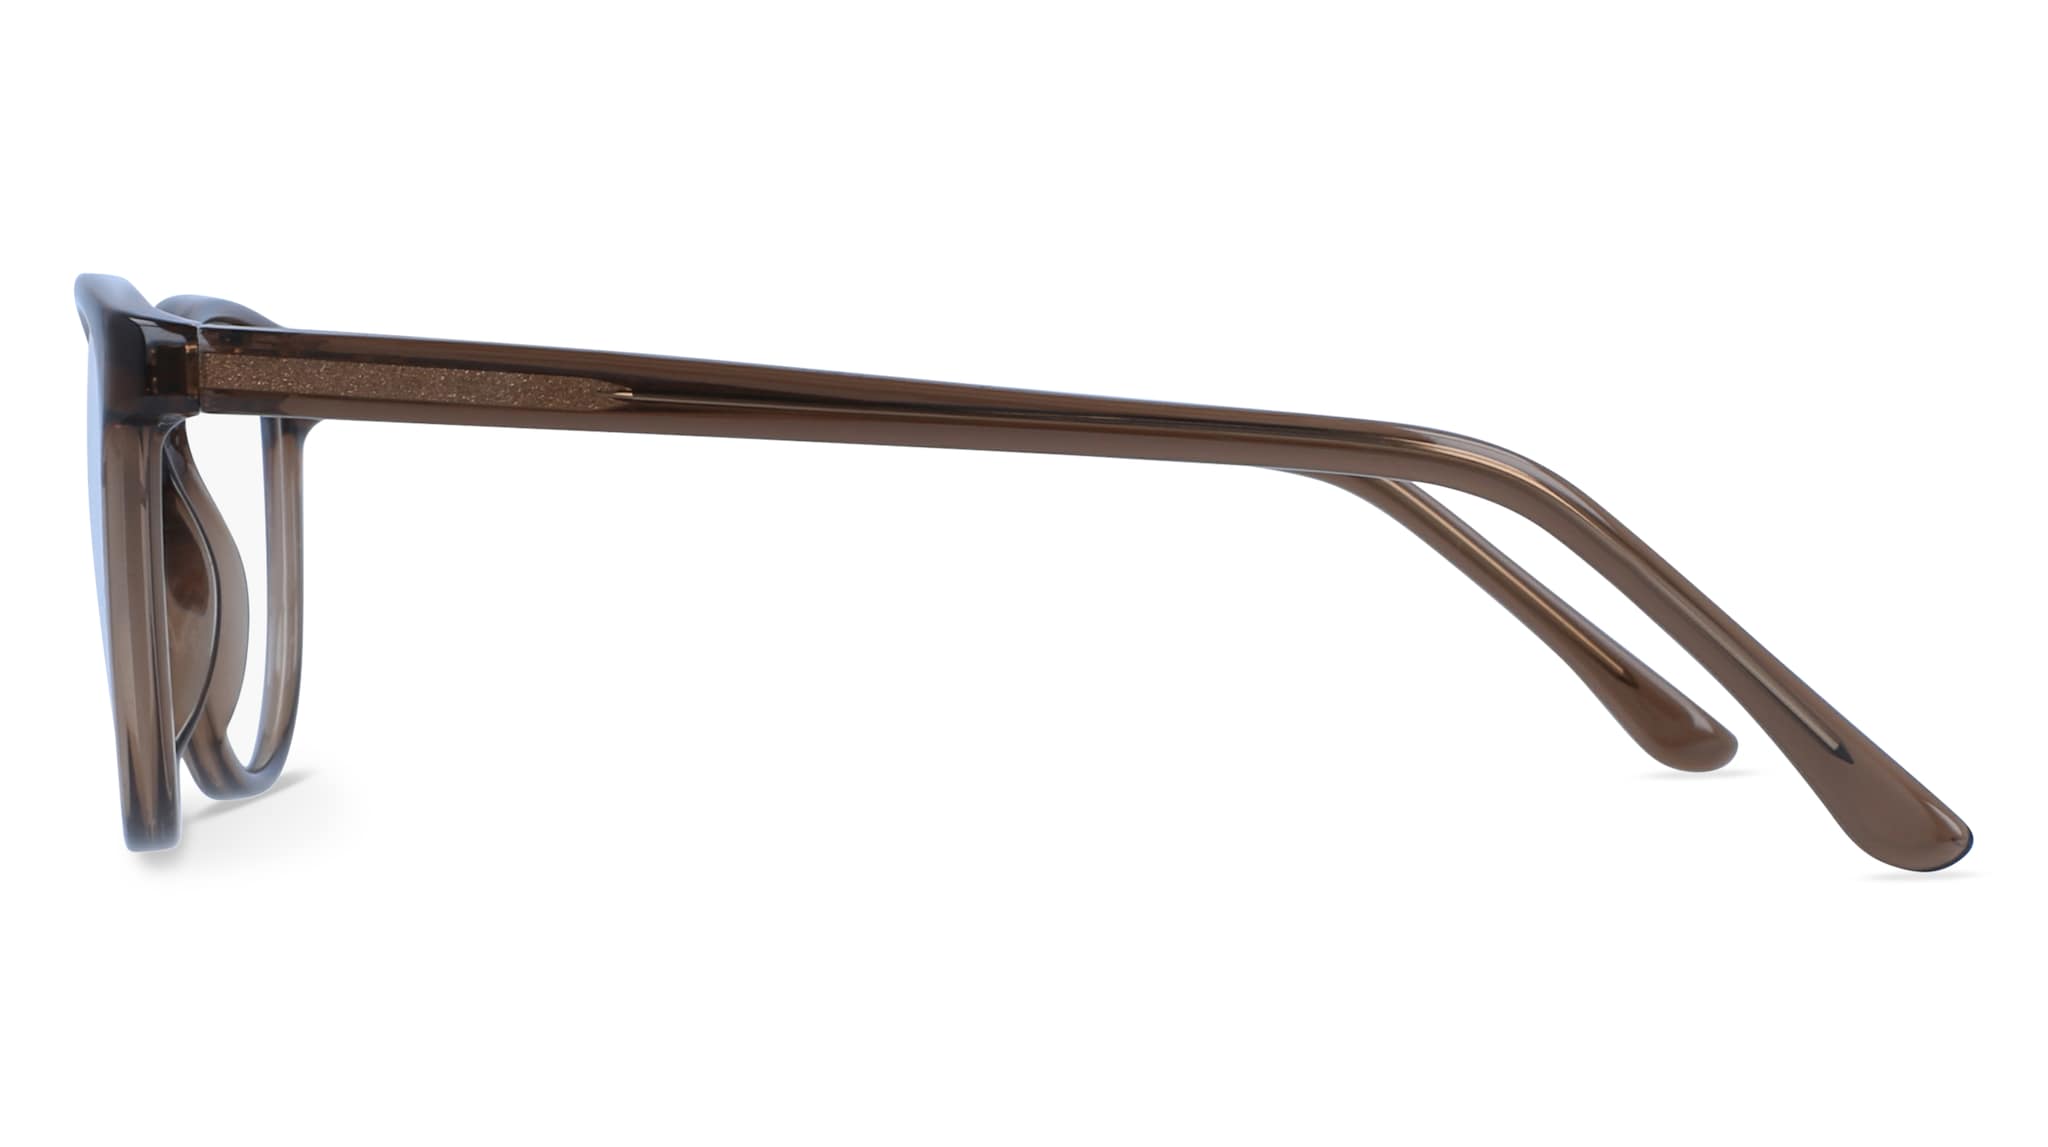 Brillen Visier mit elastischem Chaft Innen Casco Brown Leder Transparent  Objektiv Online-Verkauf 